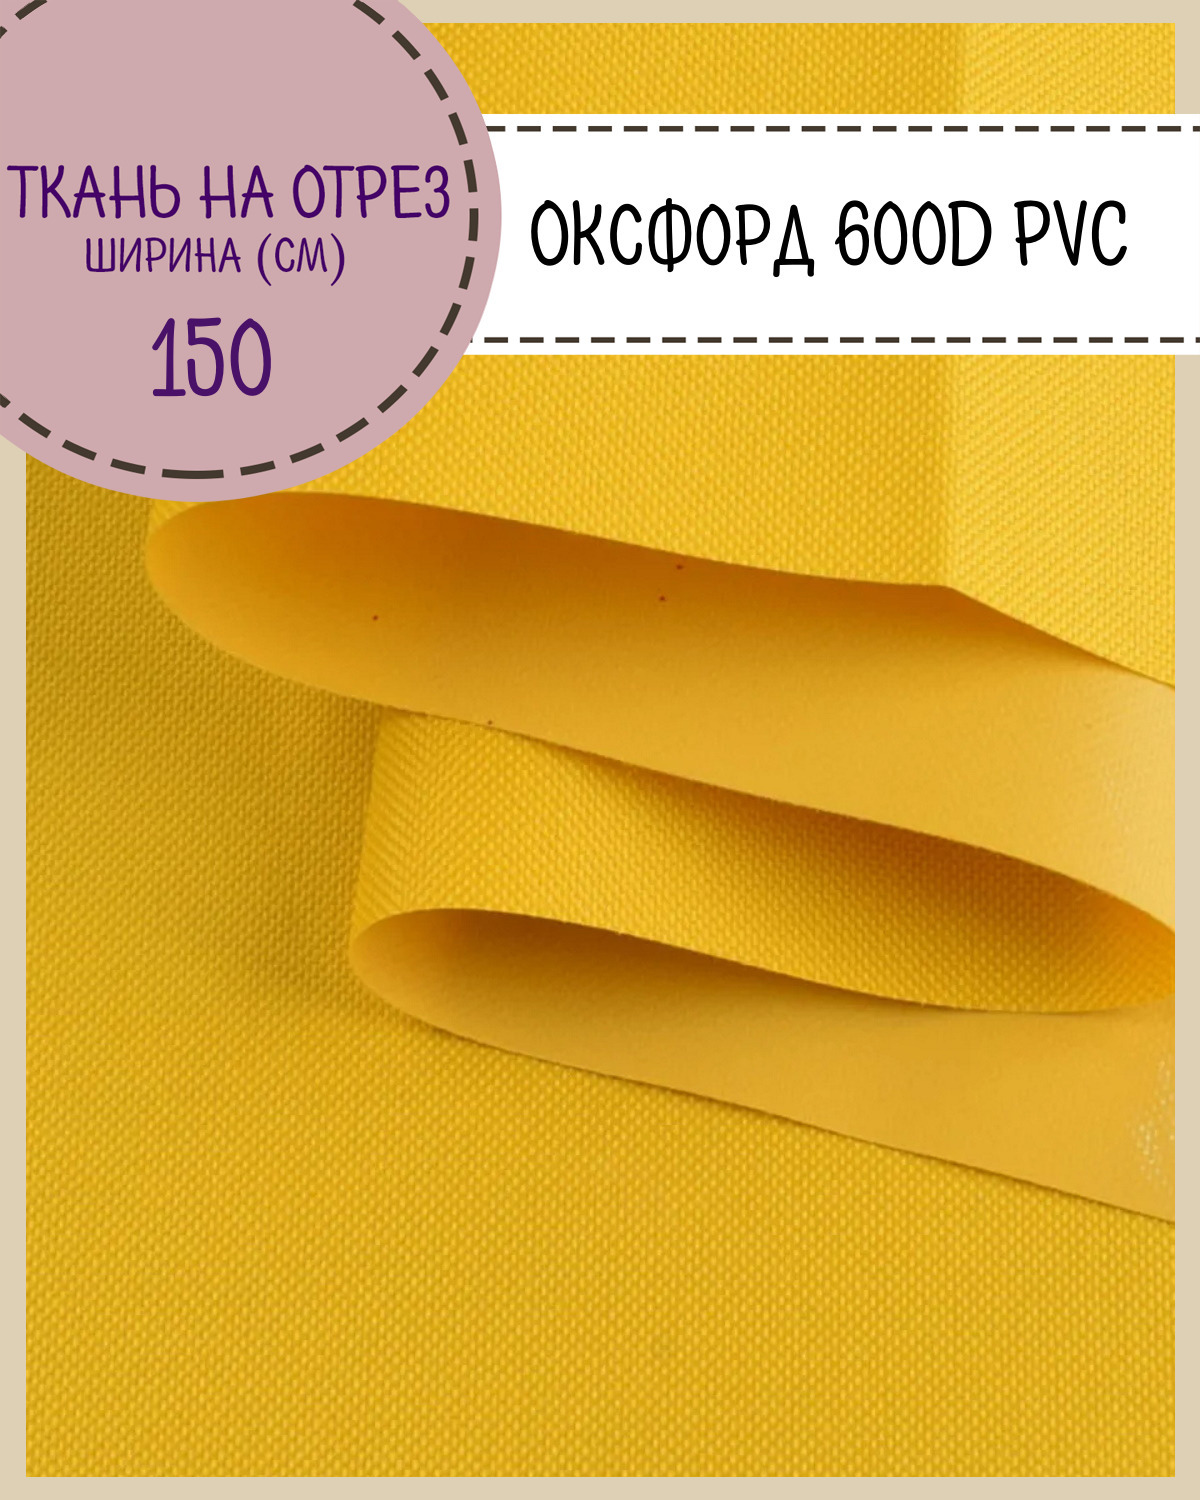 Ткань Оксфорд Любодом 600D PVC водоотталкивающая, цв. желтый, на отрез, 150*100см